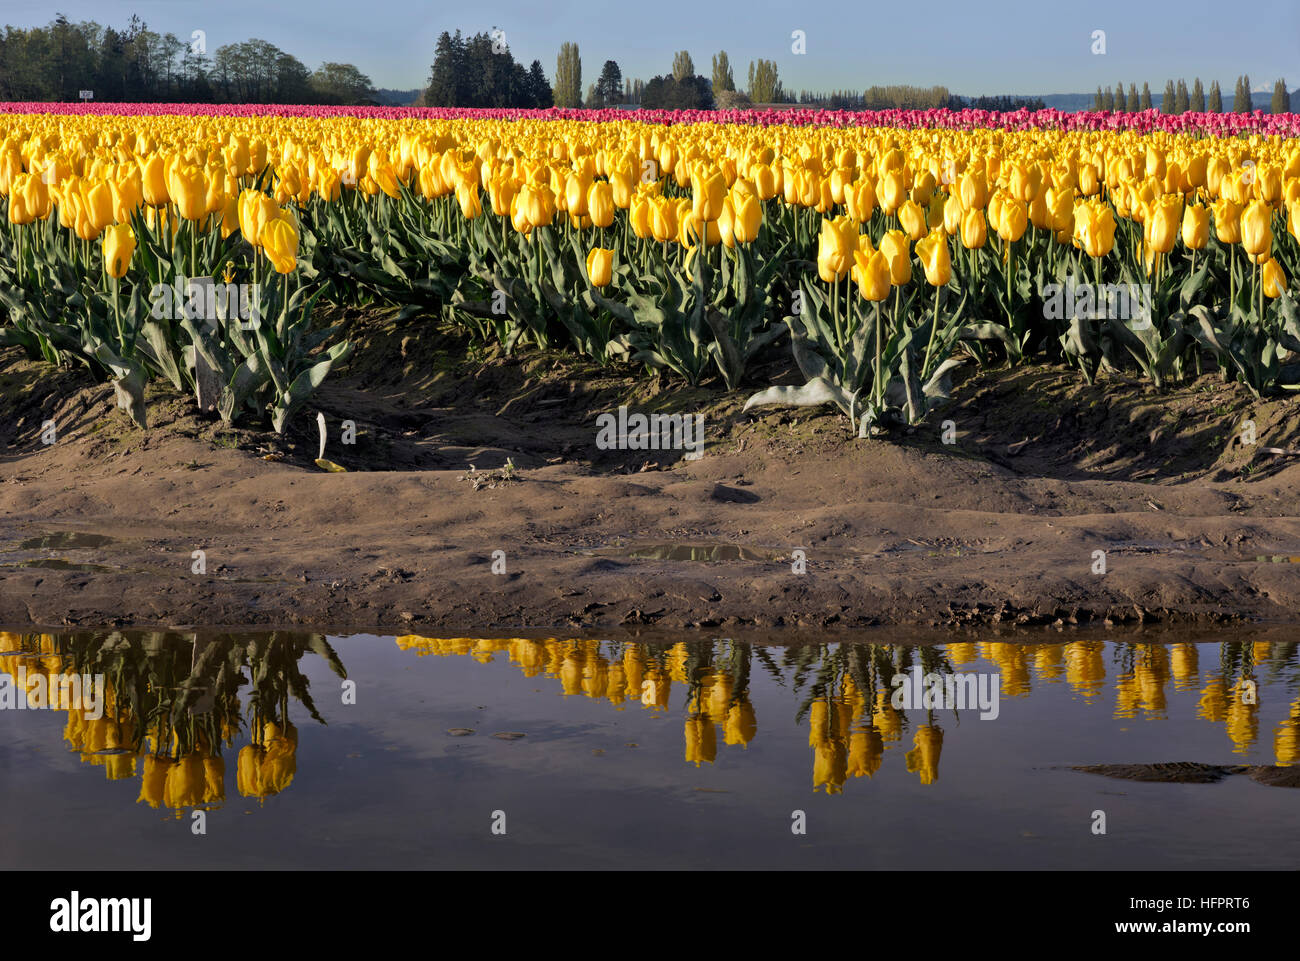 WA13051-00...WASHINGTON - tulipes jaunes poussant dans un champ d'ampoule commerciales se reflétant dans une flaque d'eau dans le Delta de la rivière Skagit. Banque D'Images